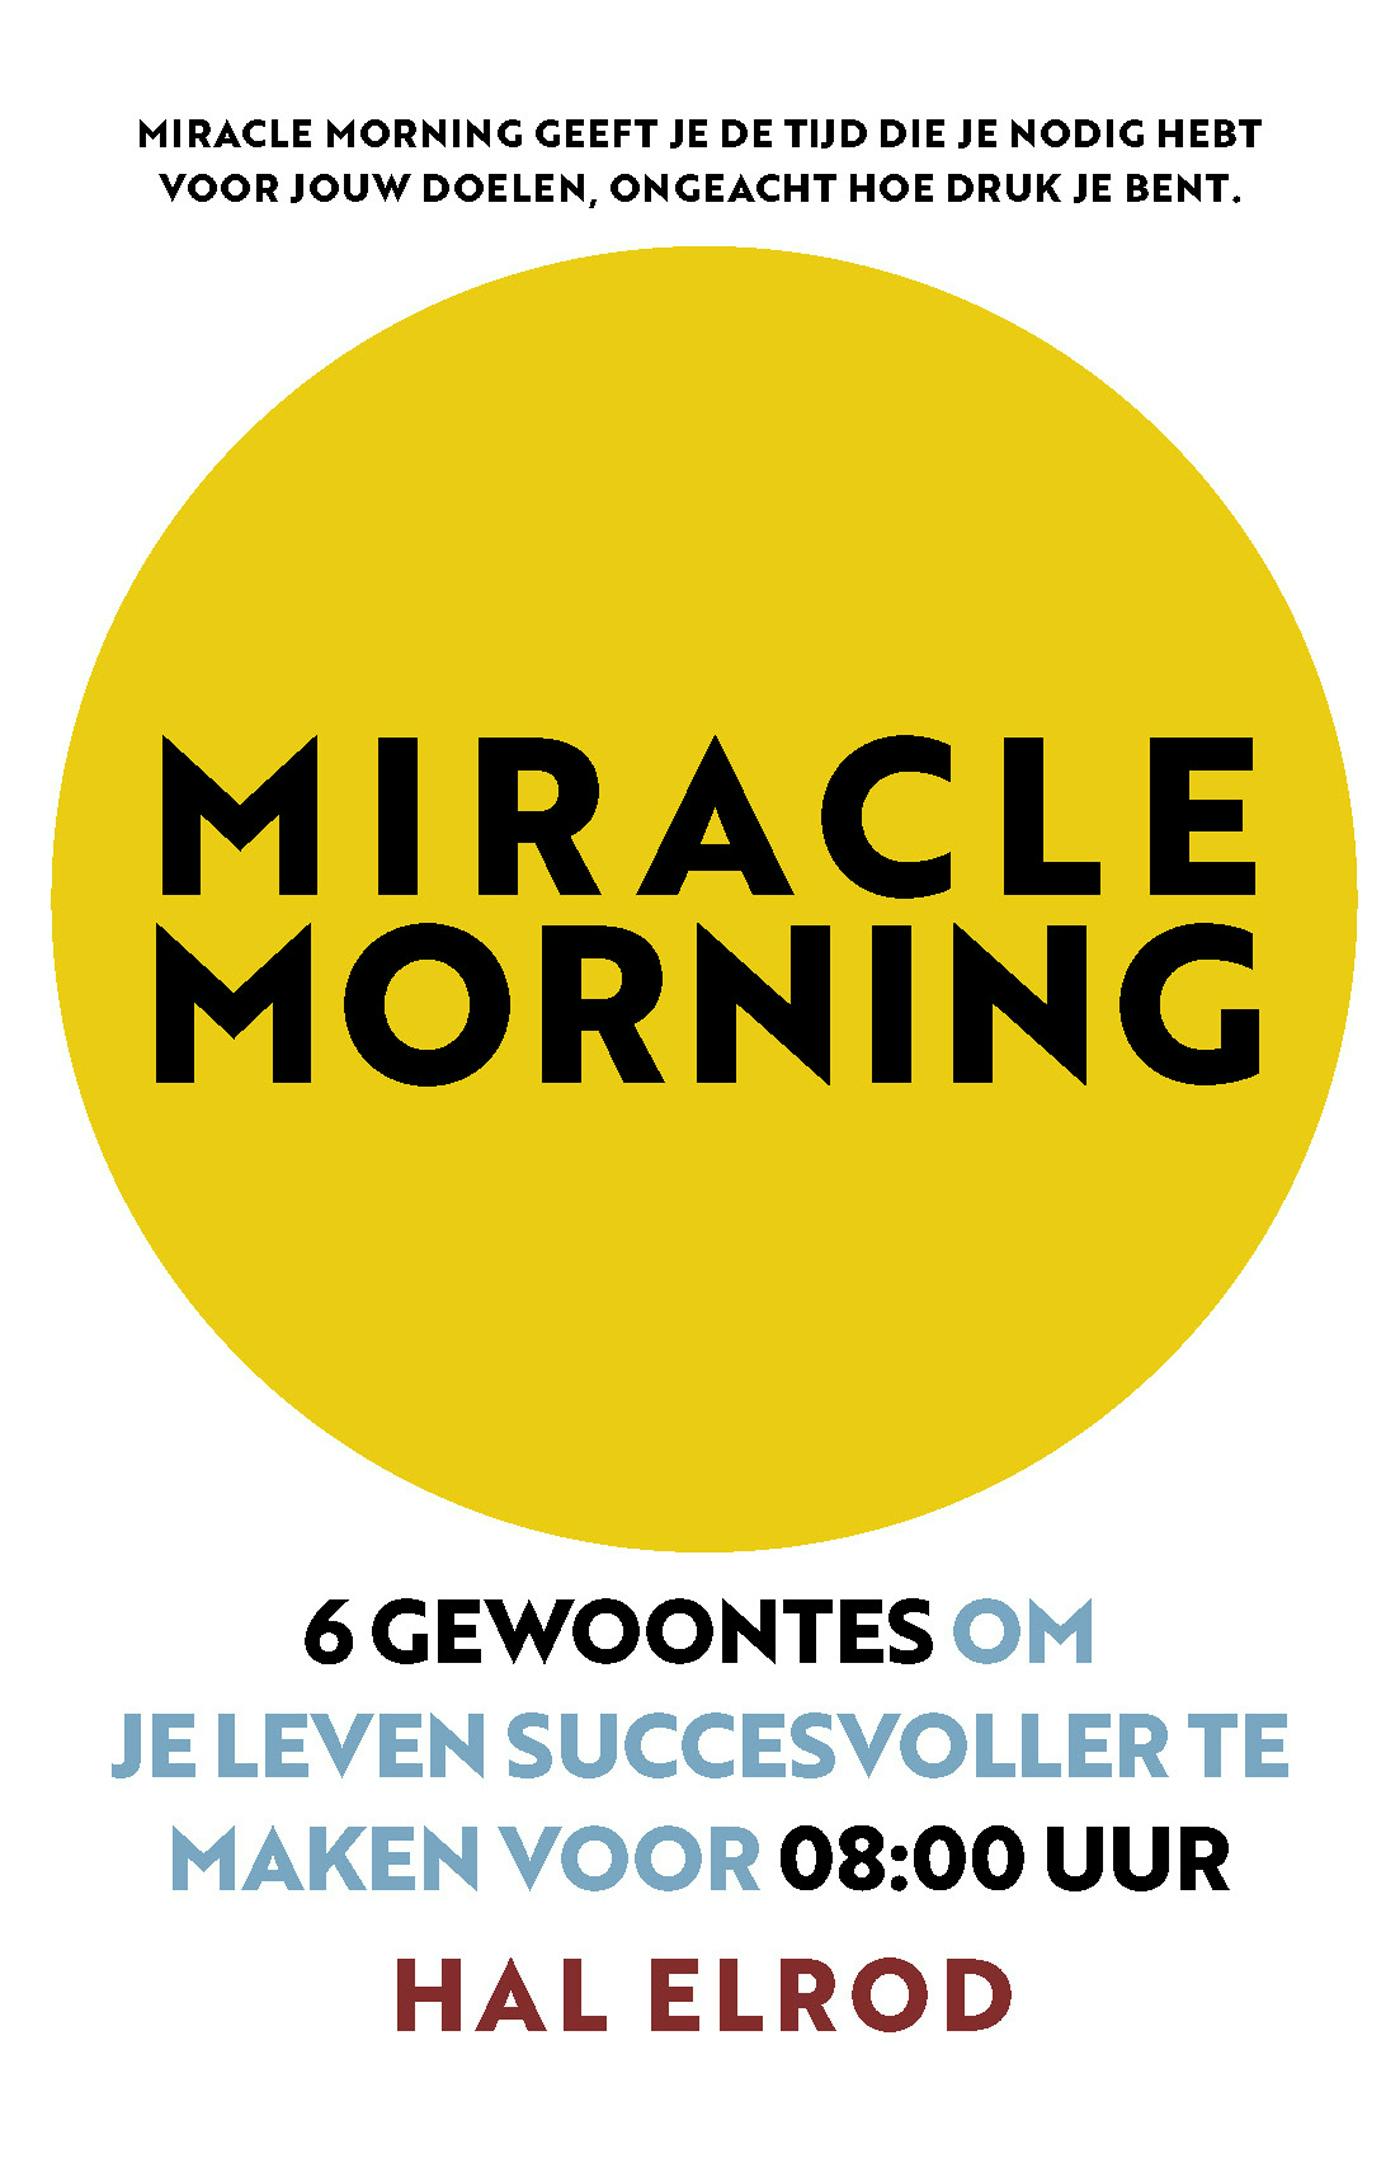 Miracle Morning: 6 gewoontes om je leven succesvoller te maken voor 08:00 uur - undefined